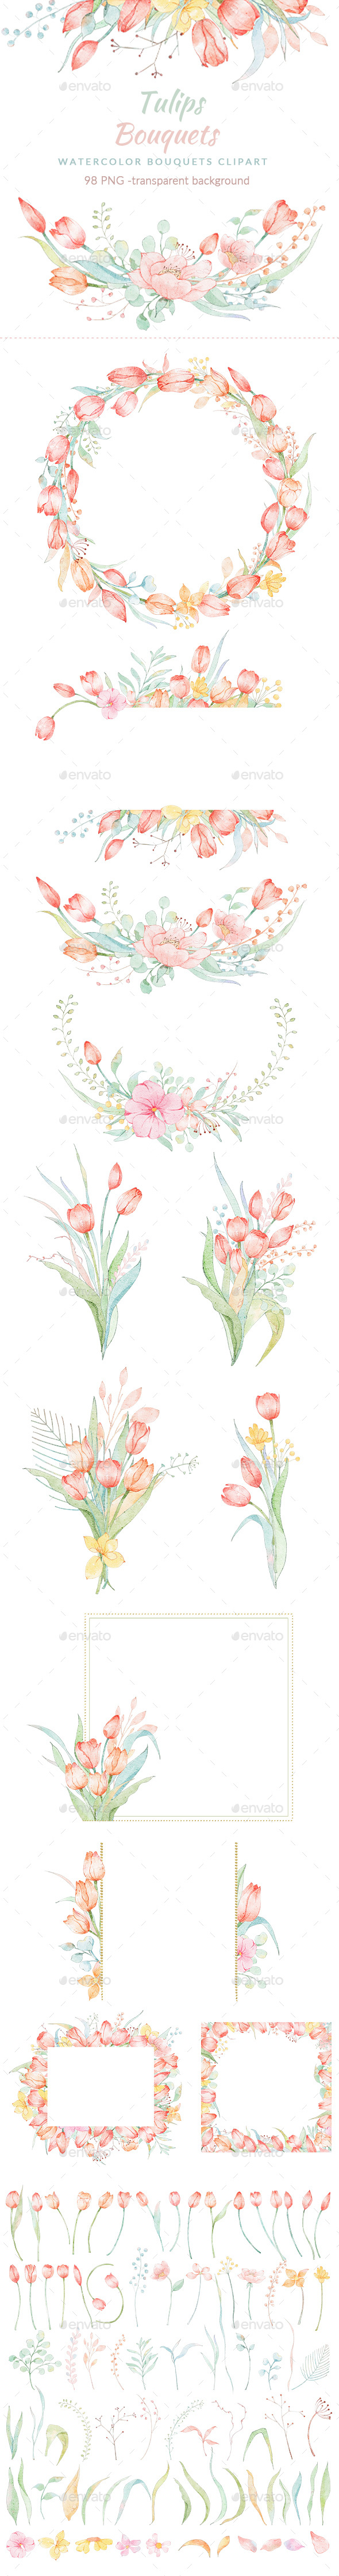 Watercolor Tulips Bouquets Clipar Set